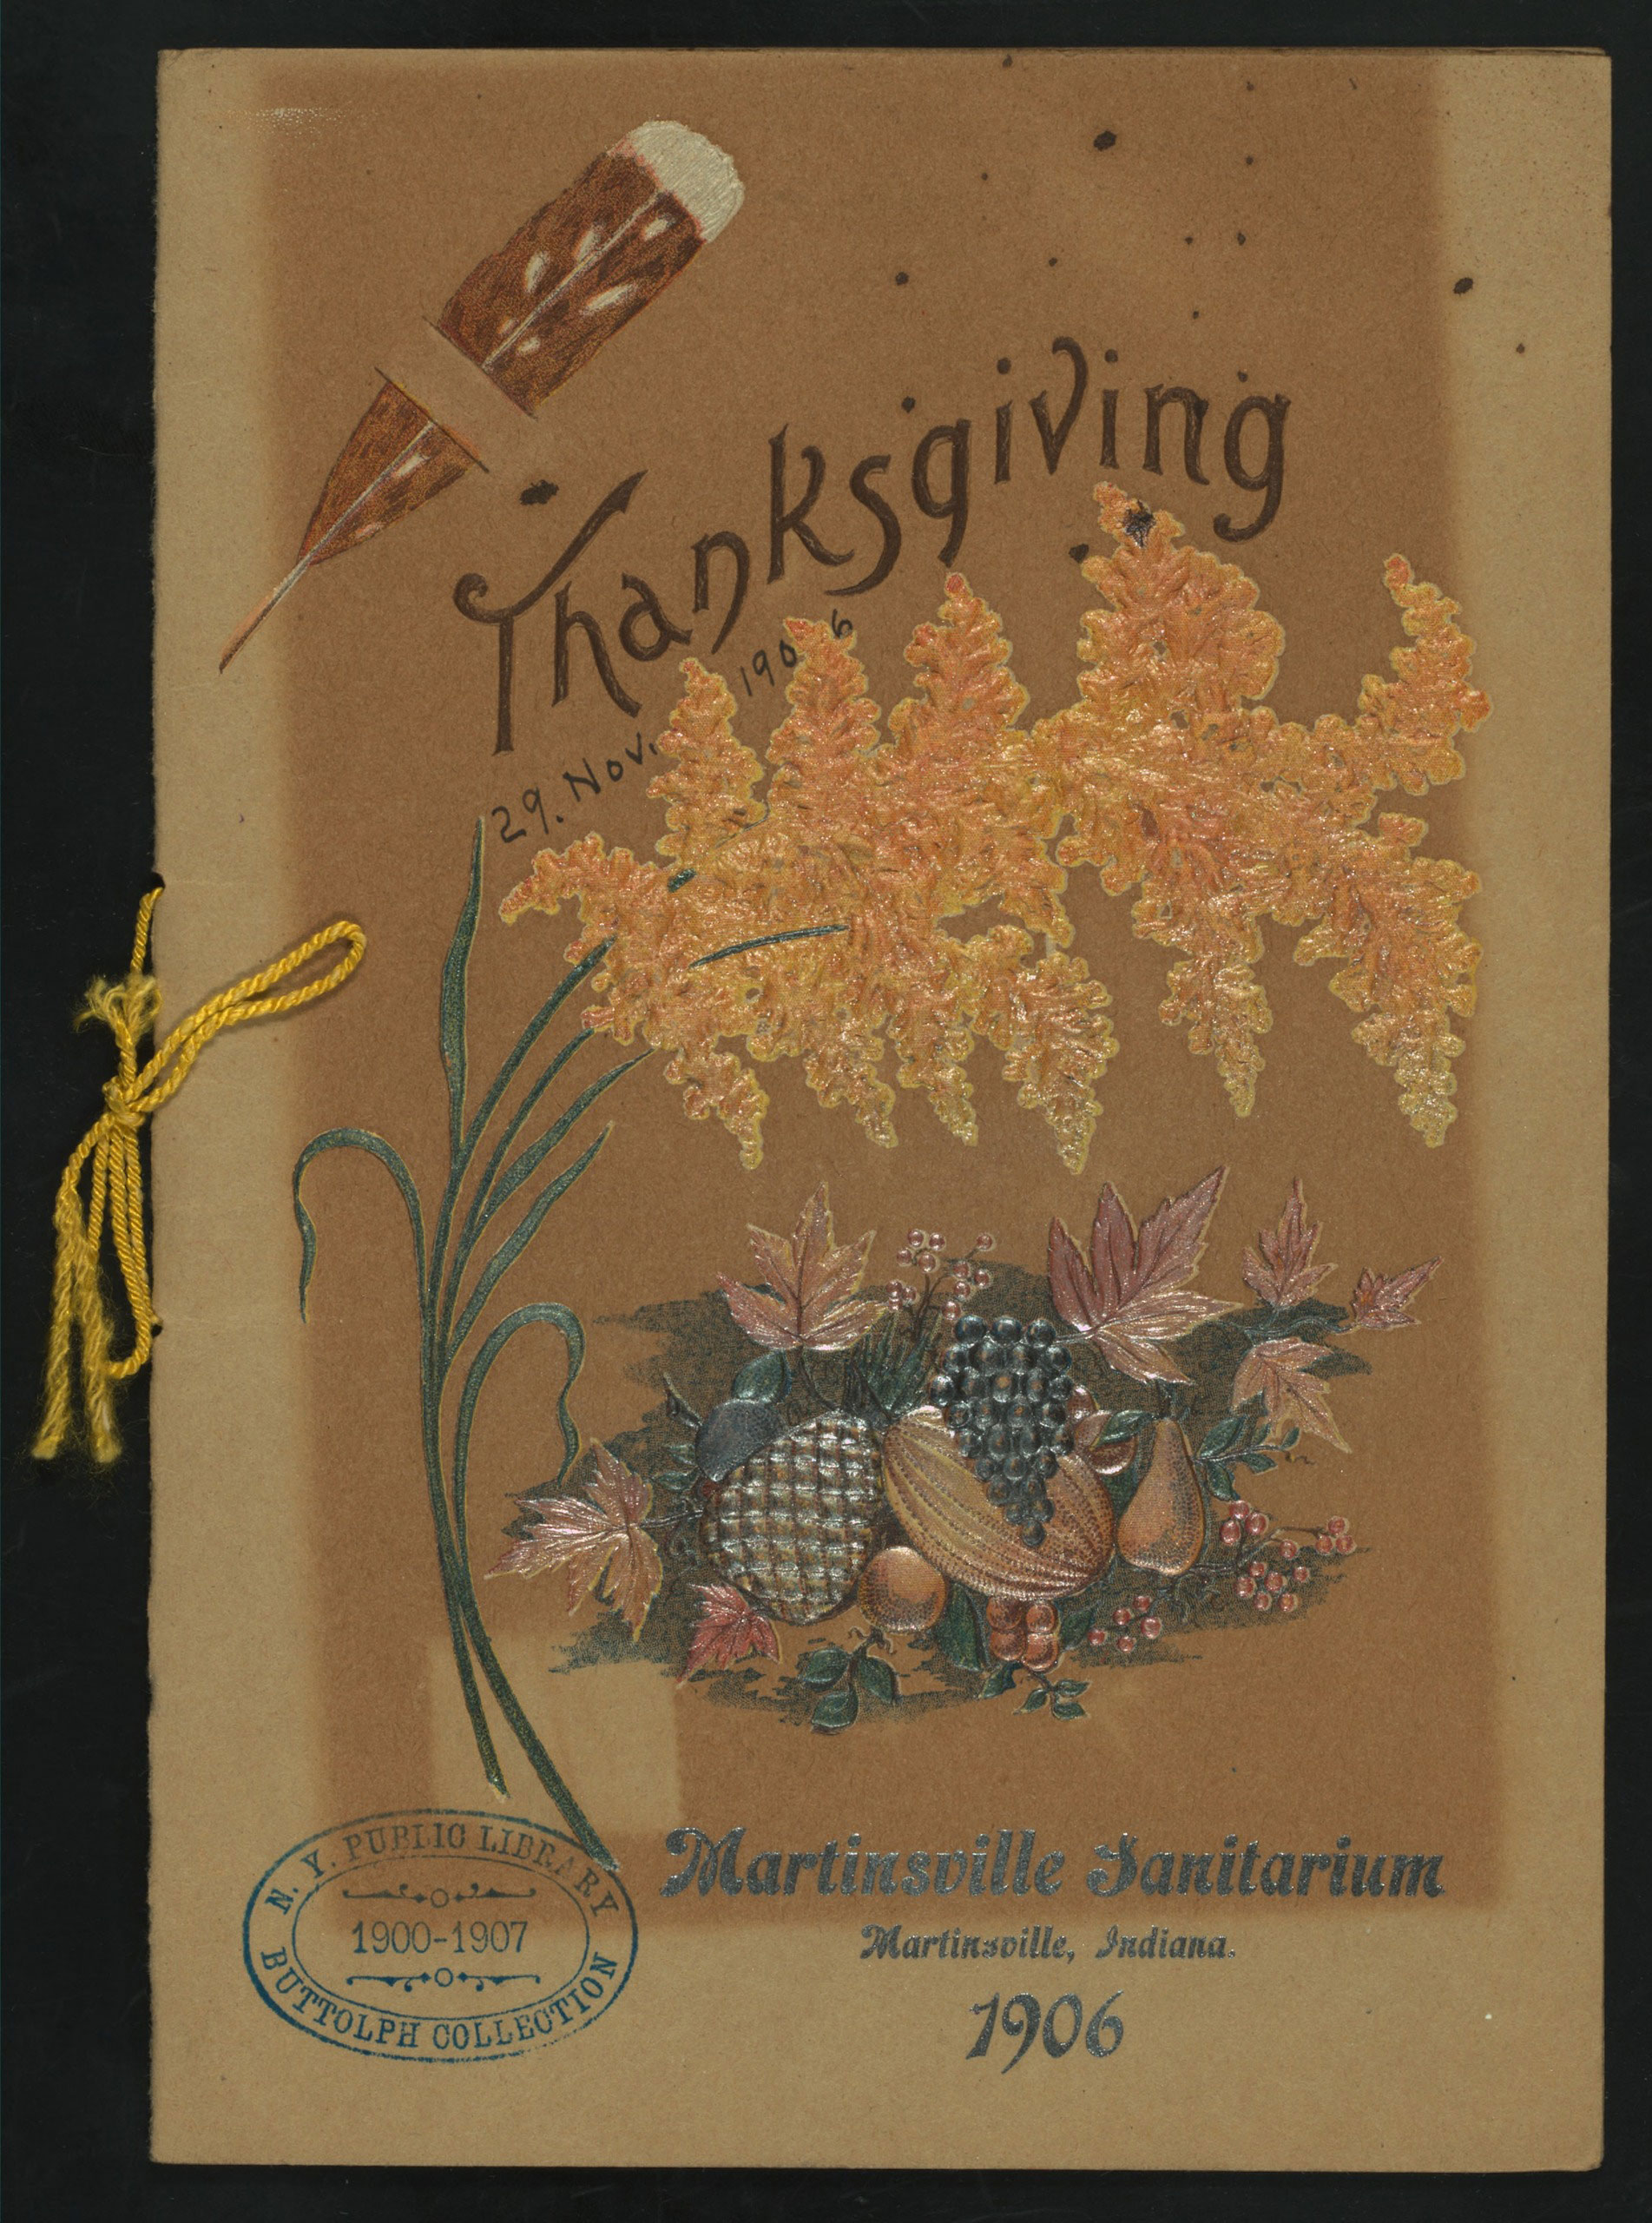 Thanksgiving Day Dinner menu at the Martinsville Sanatarium in Martinsville, IND, 1906.